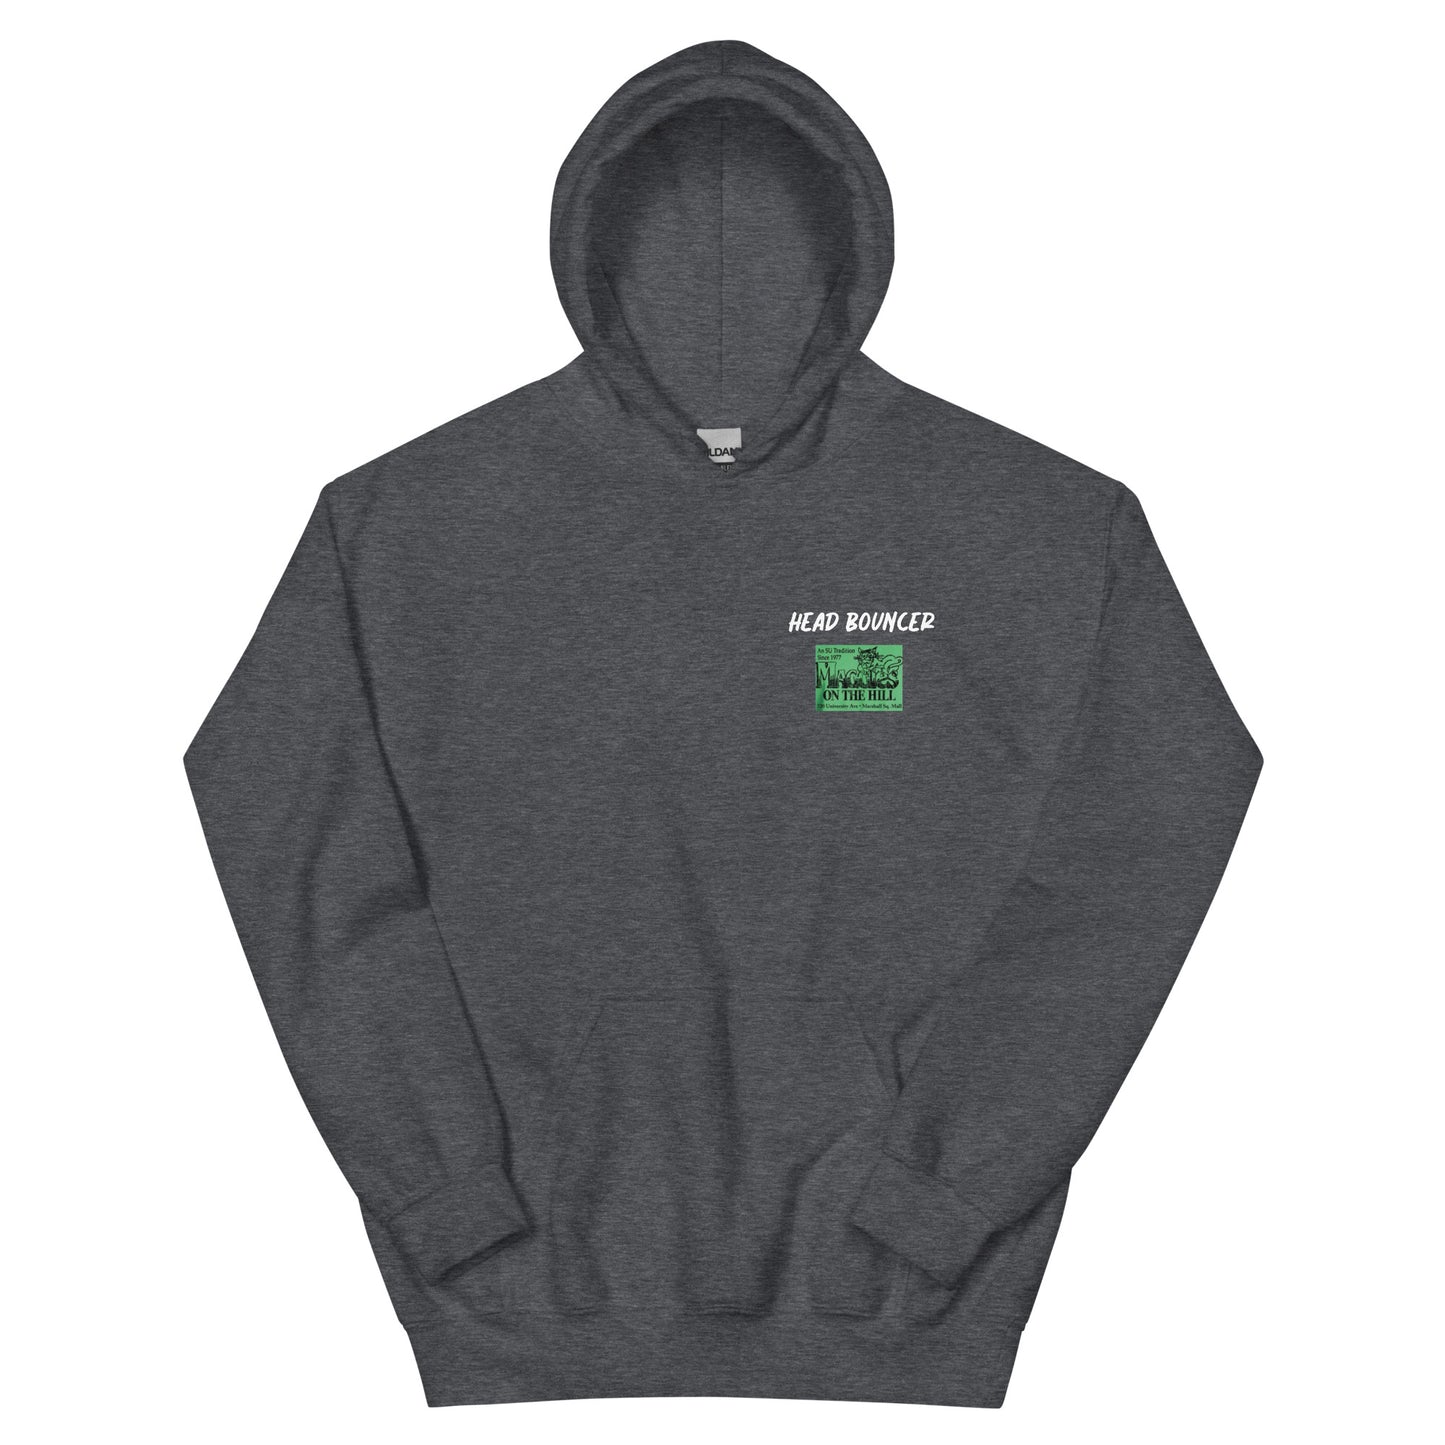 Best men's dark heather sweatshirt graphic hoodie with warm pouch